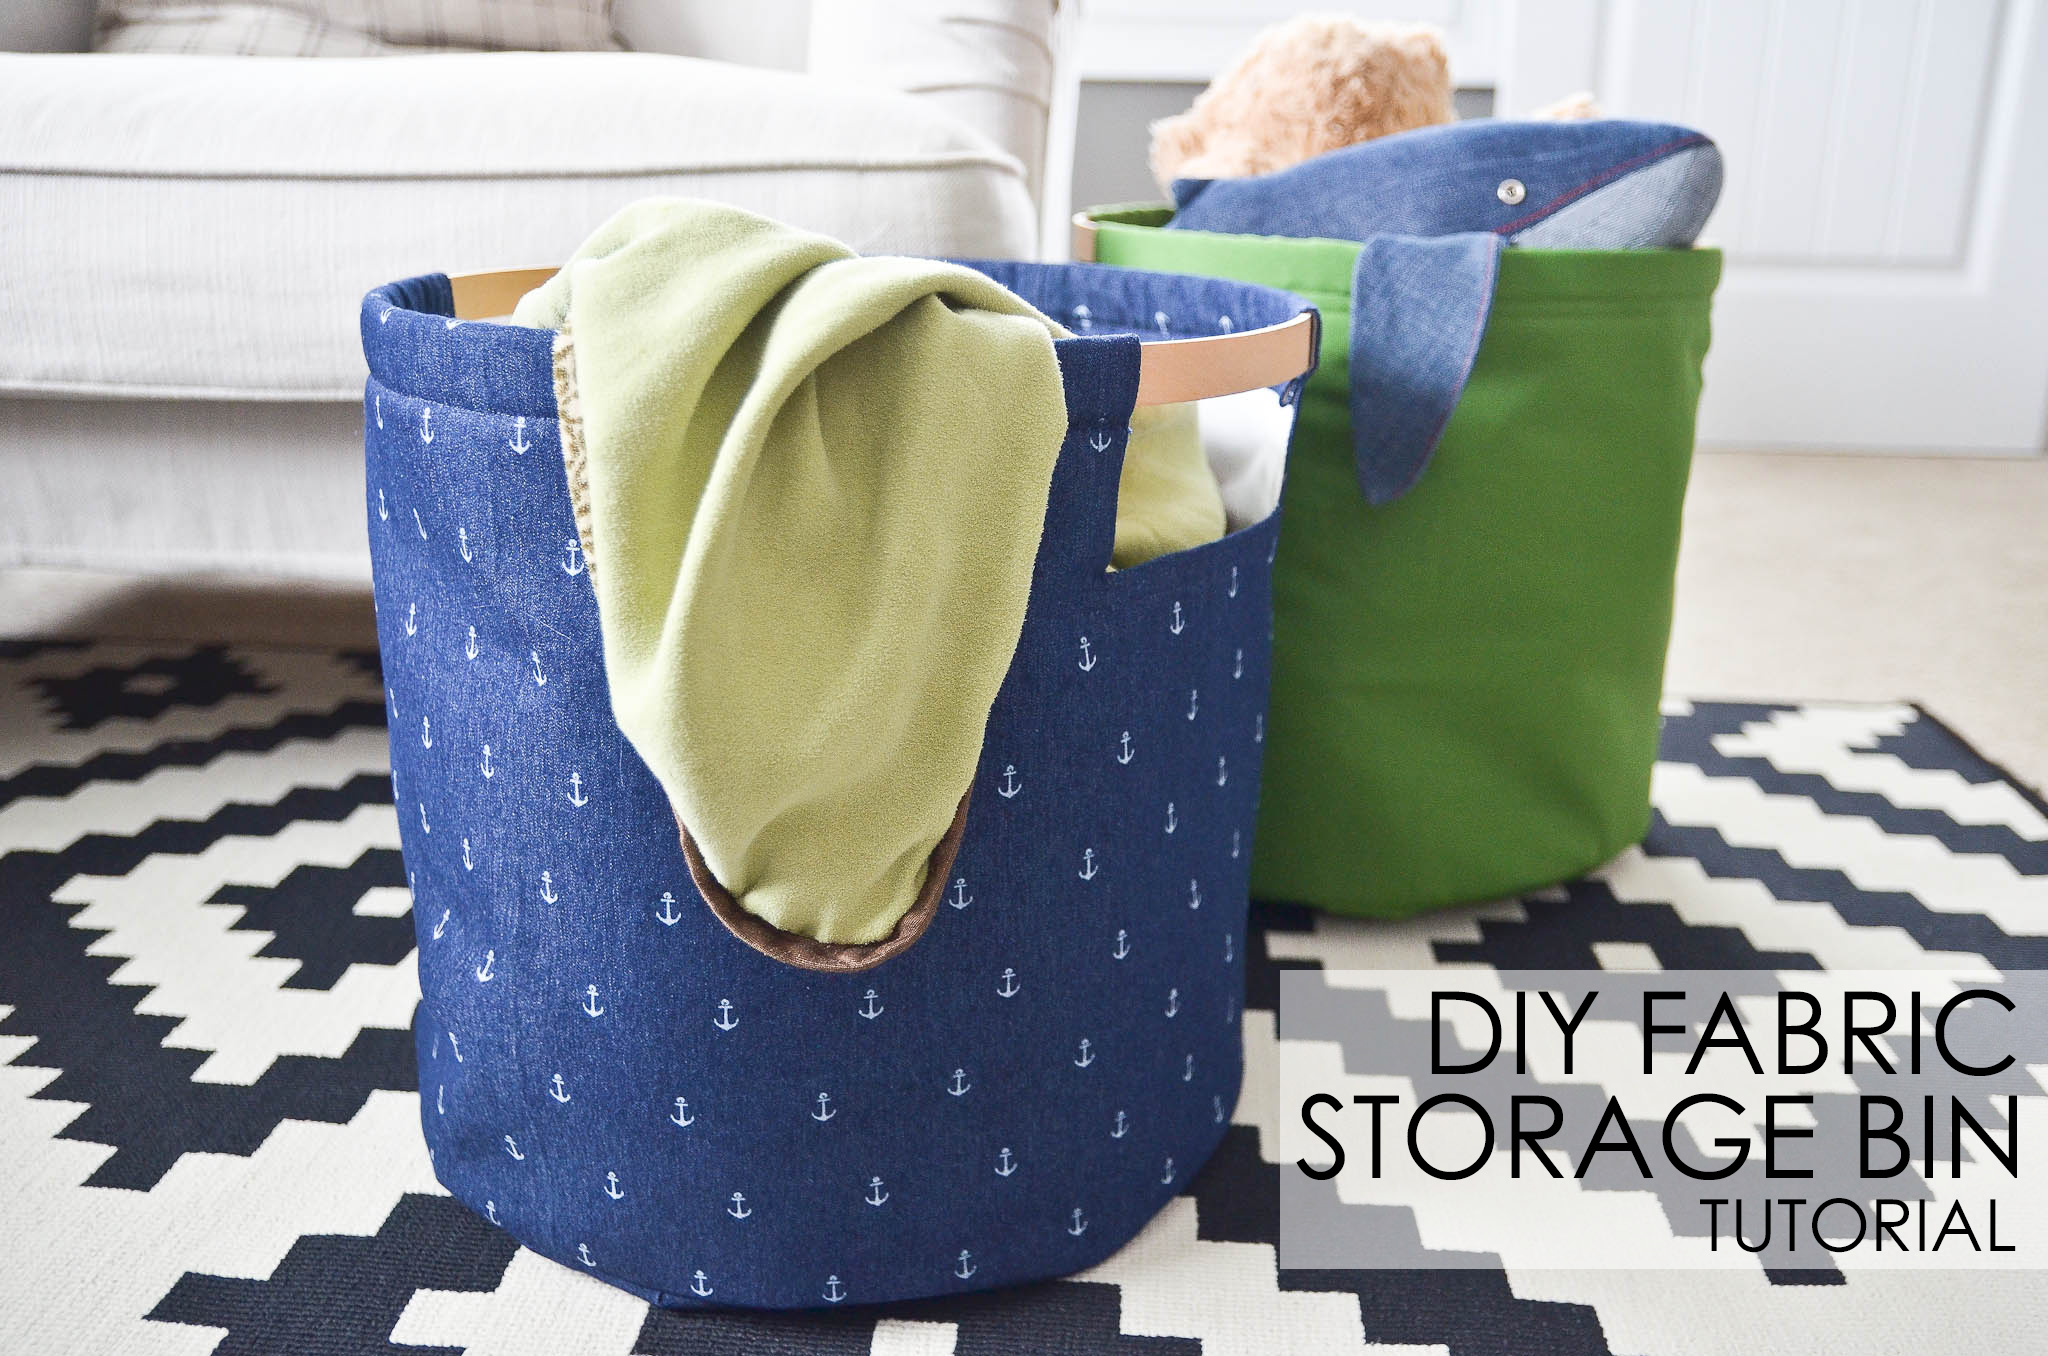 DIY Fabric Storage Bins Tutorial